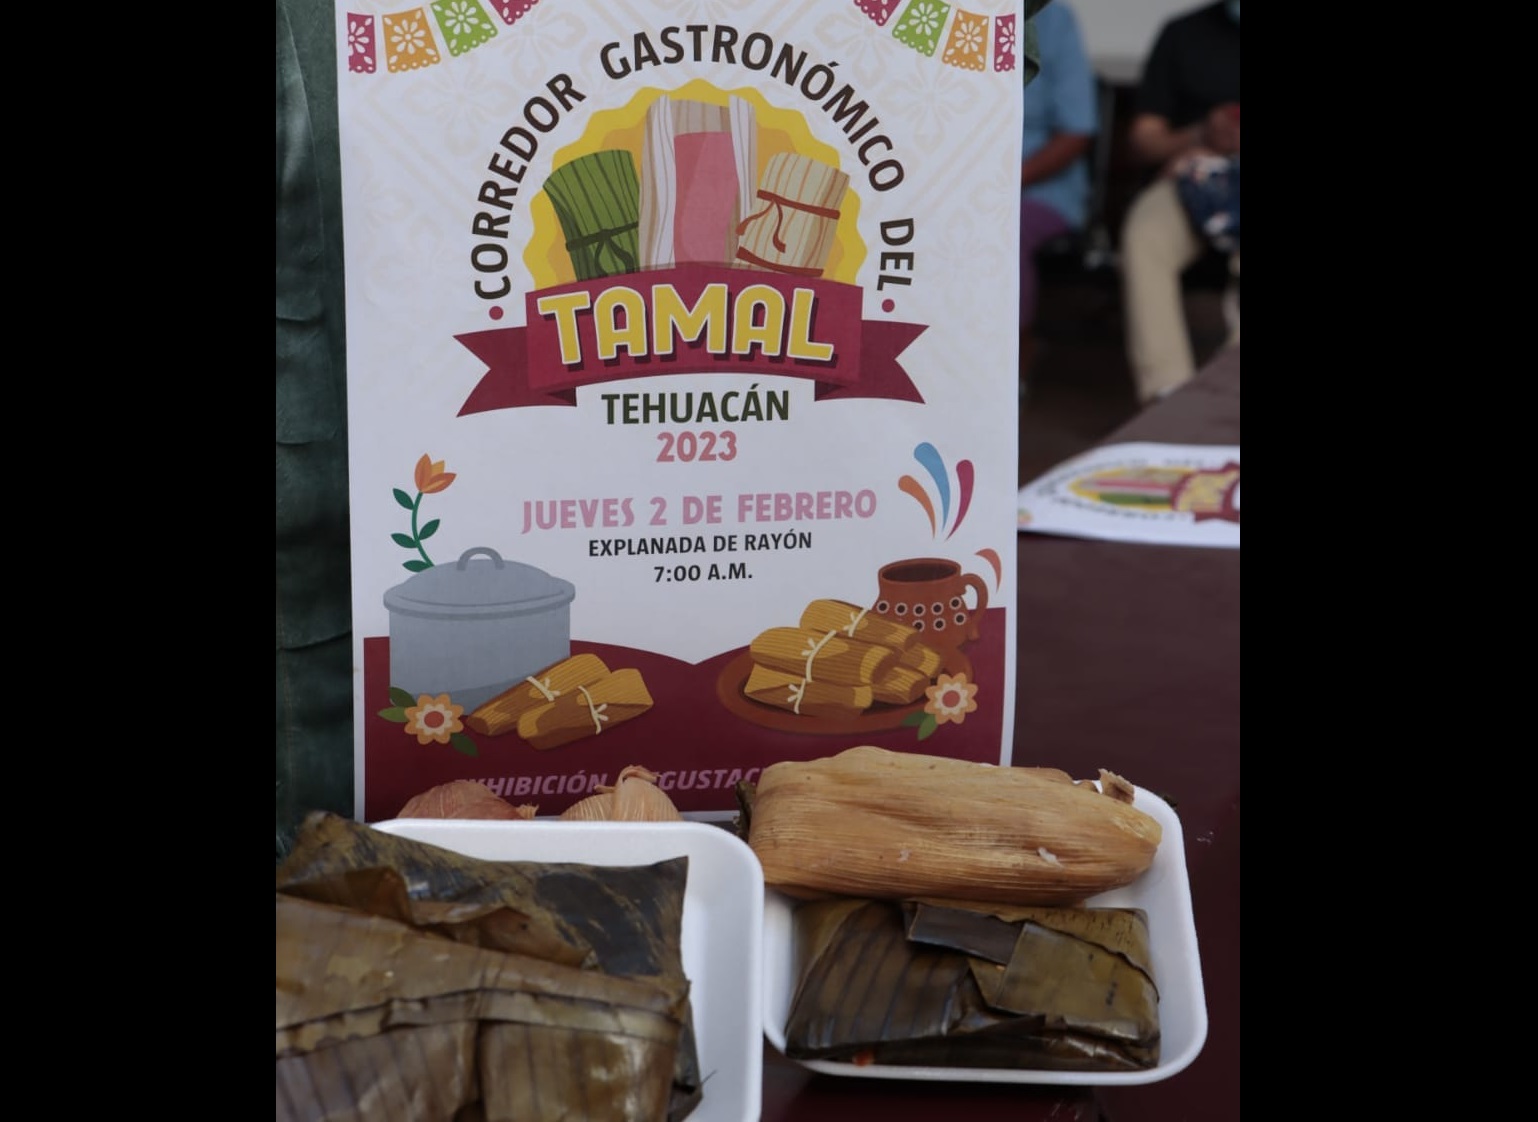 Venderán más de 2 mil tamales en corredor gastronómico de Tehuacán